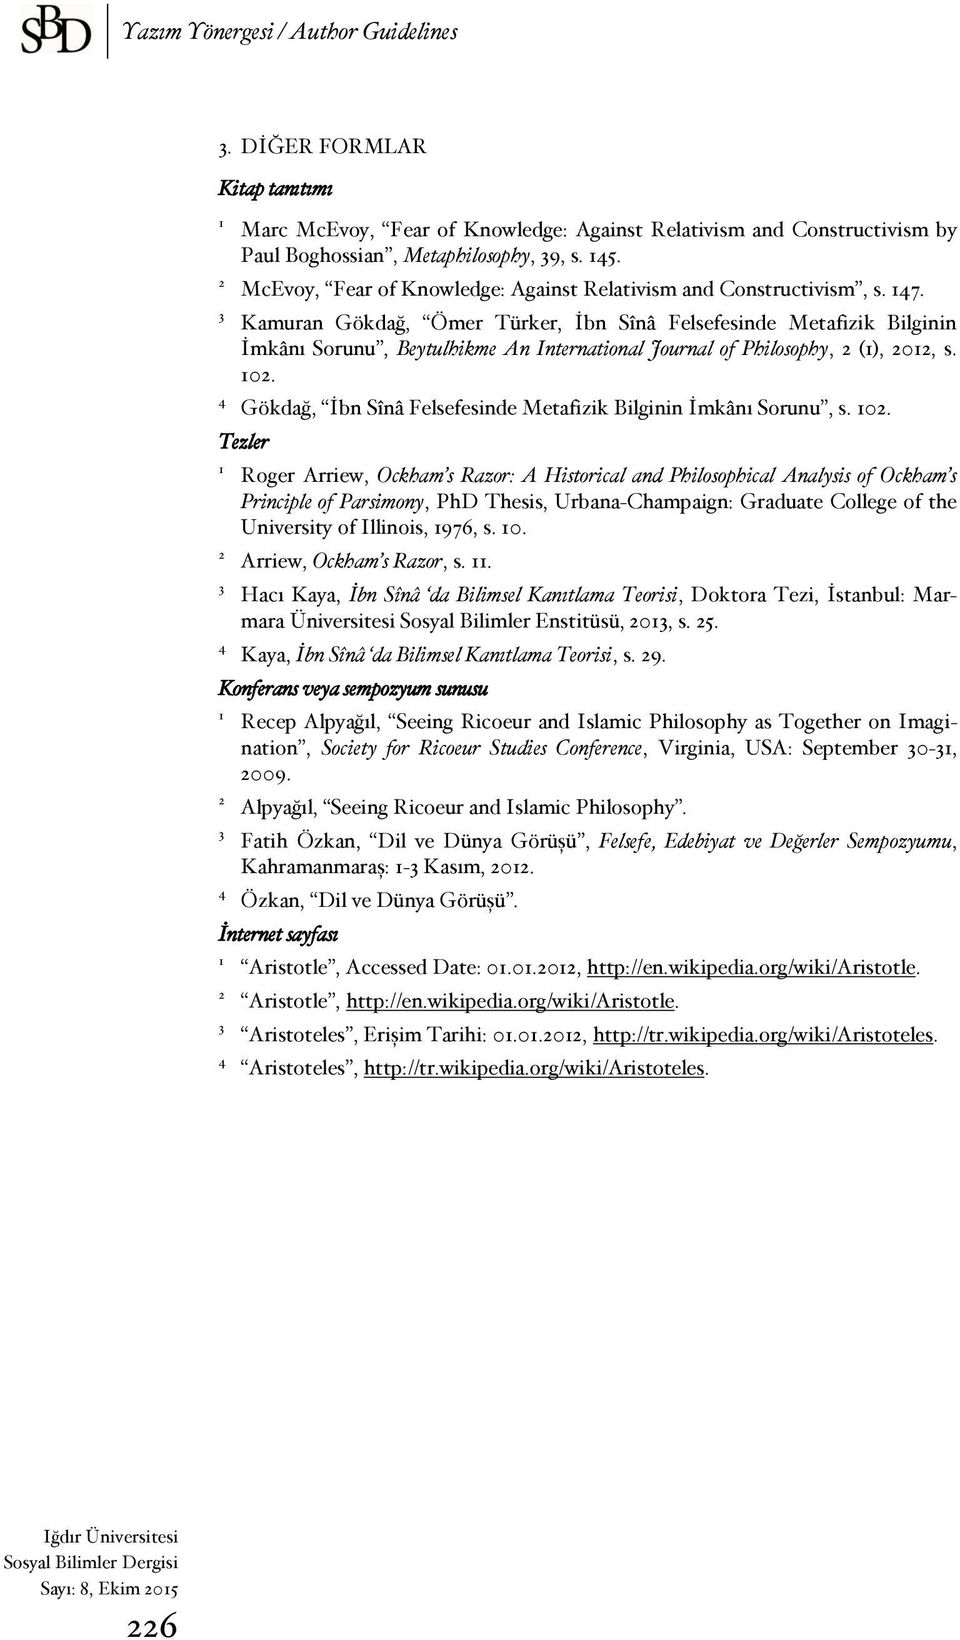 Kamuran Gökdağ, Ömer Türker, İbn Sînâ Felsefesinde Metafizik Bilginin İmkânı Sorunu, Beytulhikme An International Journal of Philosophy, (), 0,